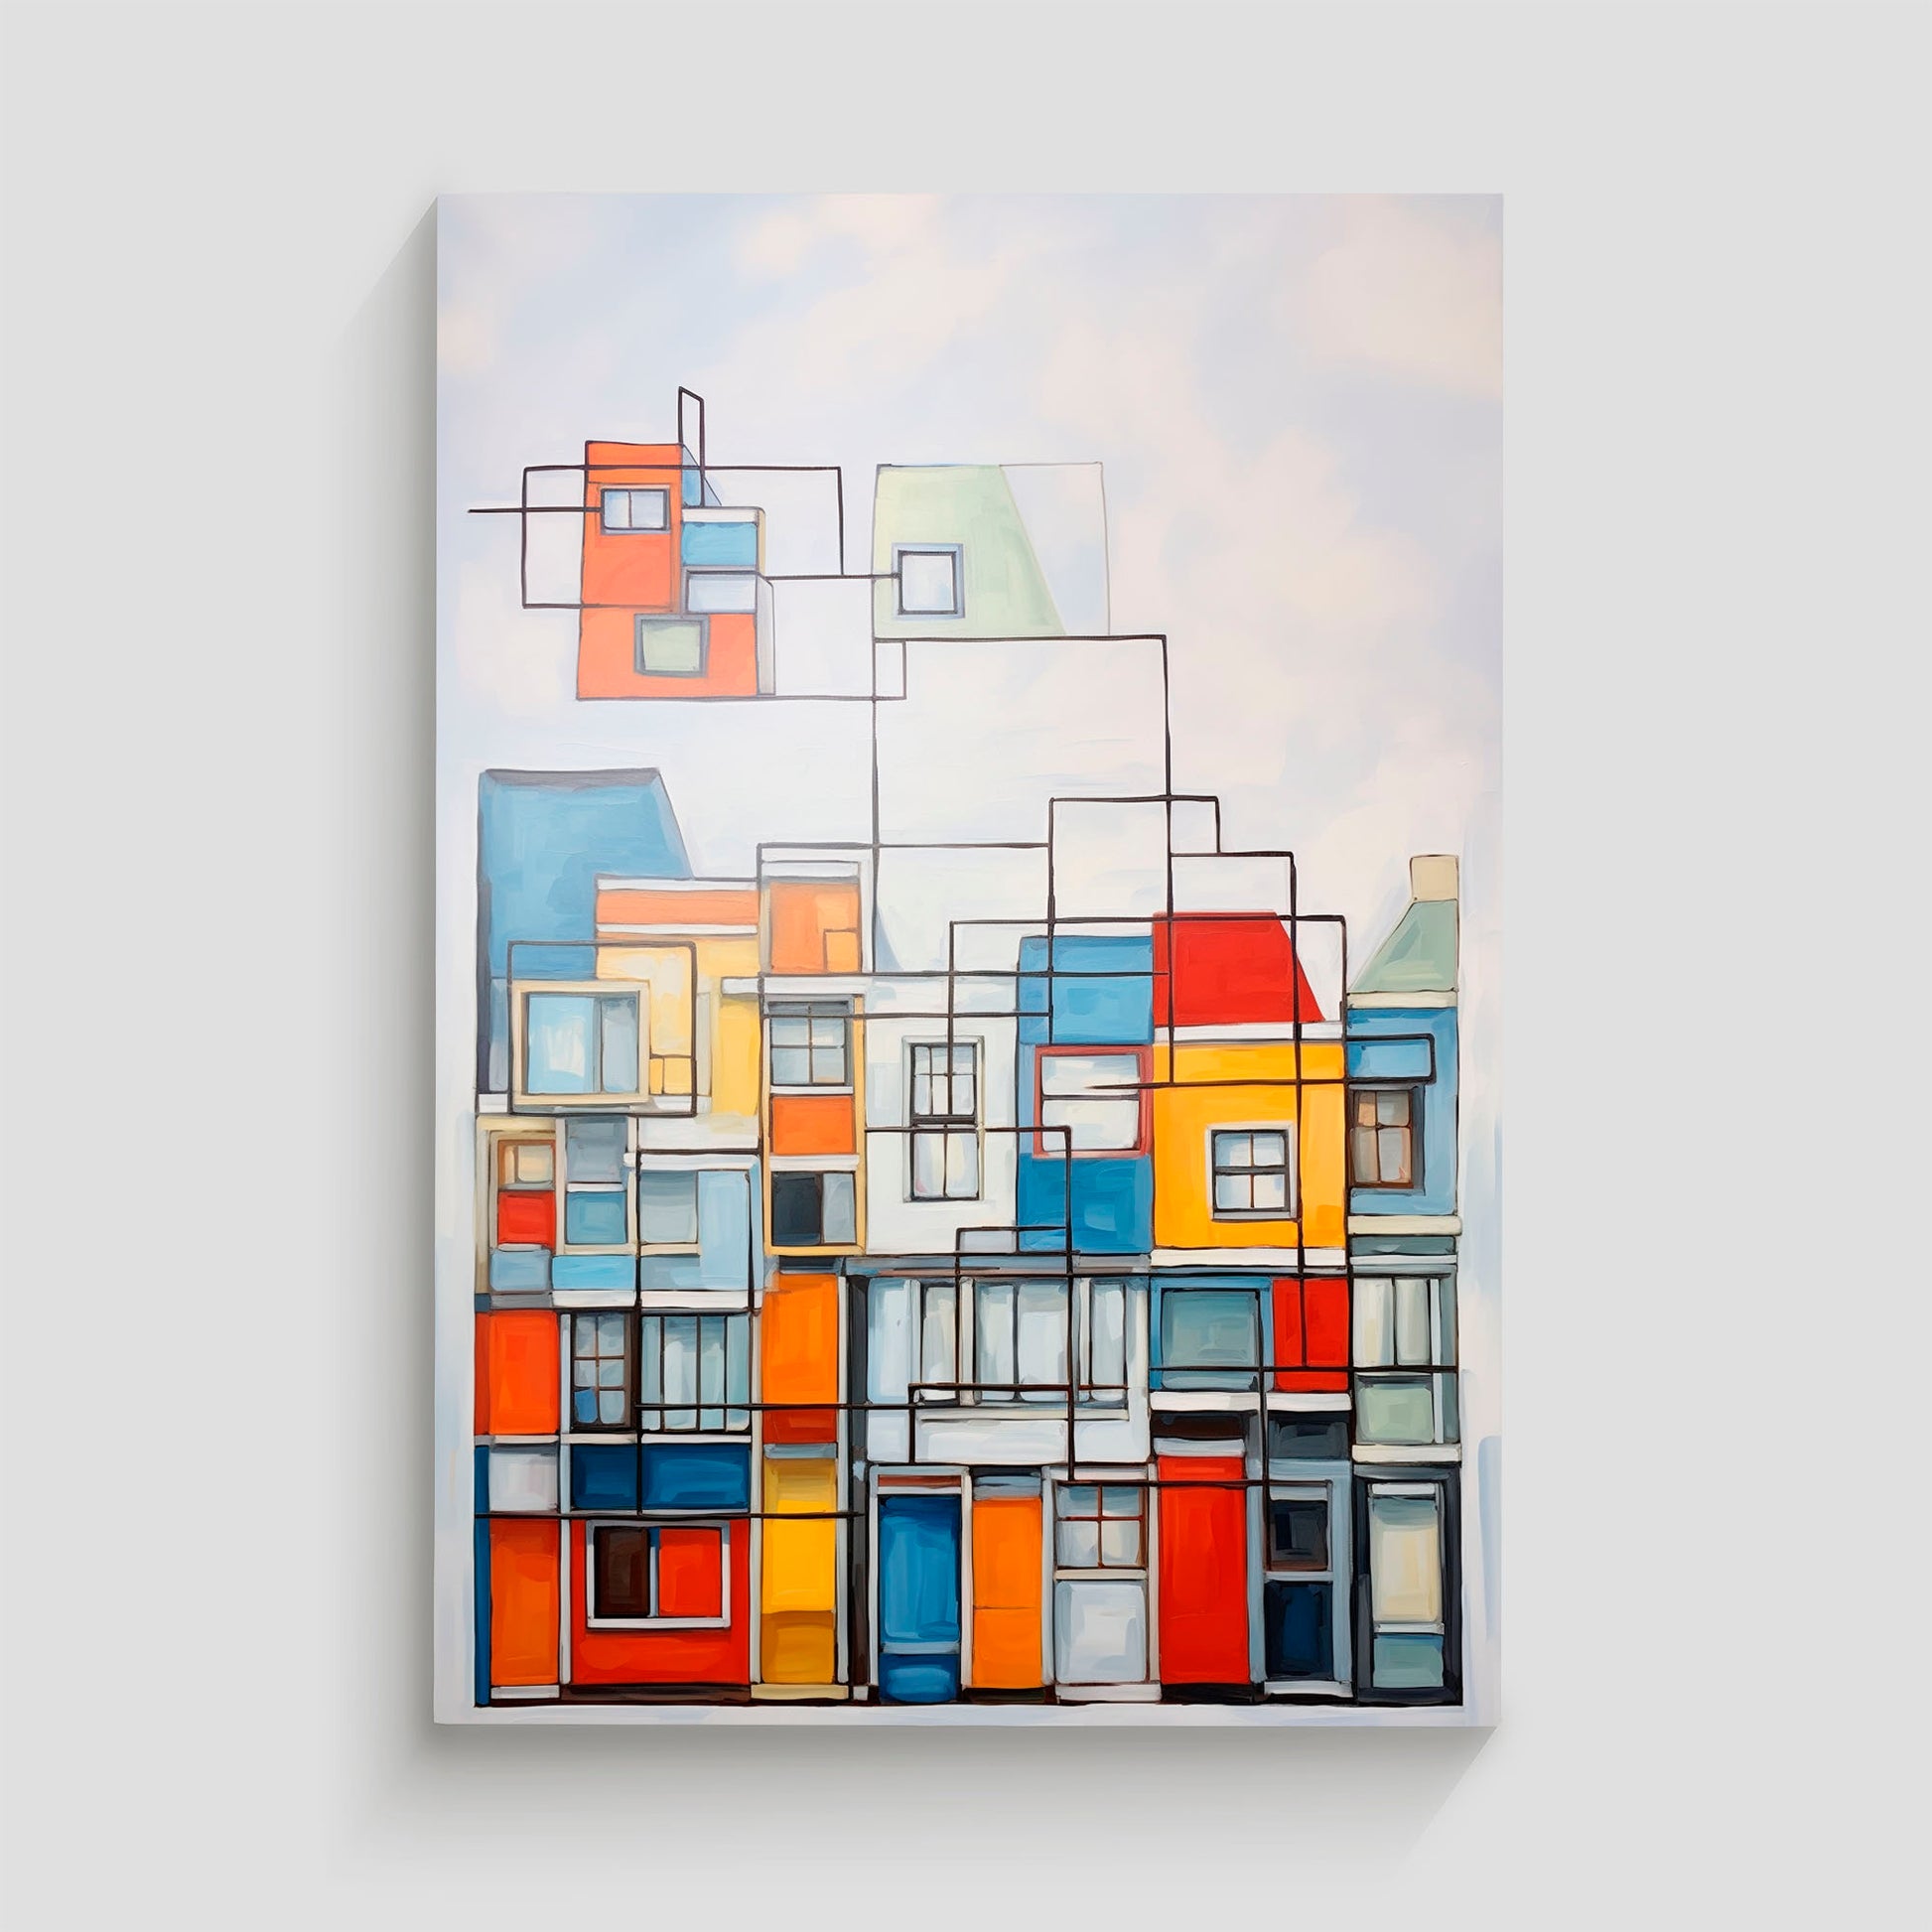 Arte abstracto de edificios con diseño geométrico en colores amarillo, azul, rojo y blanco.